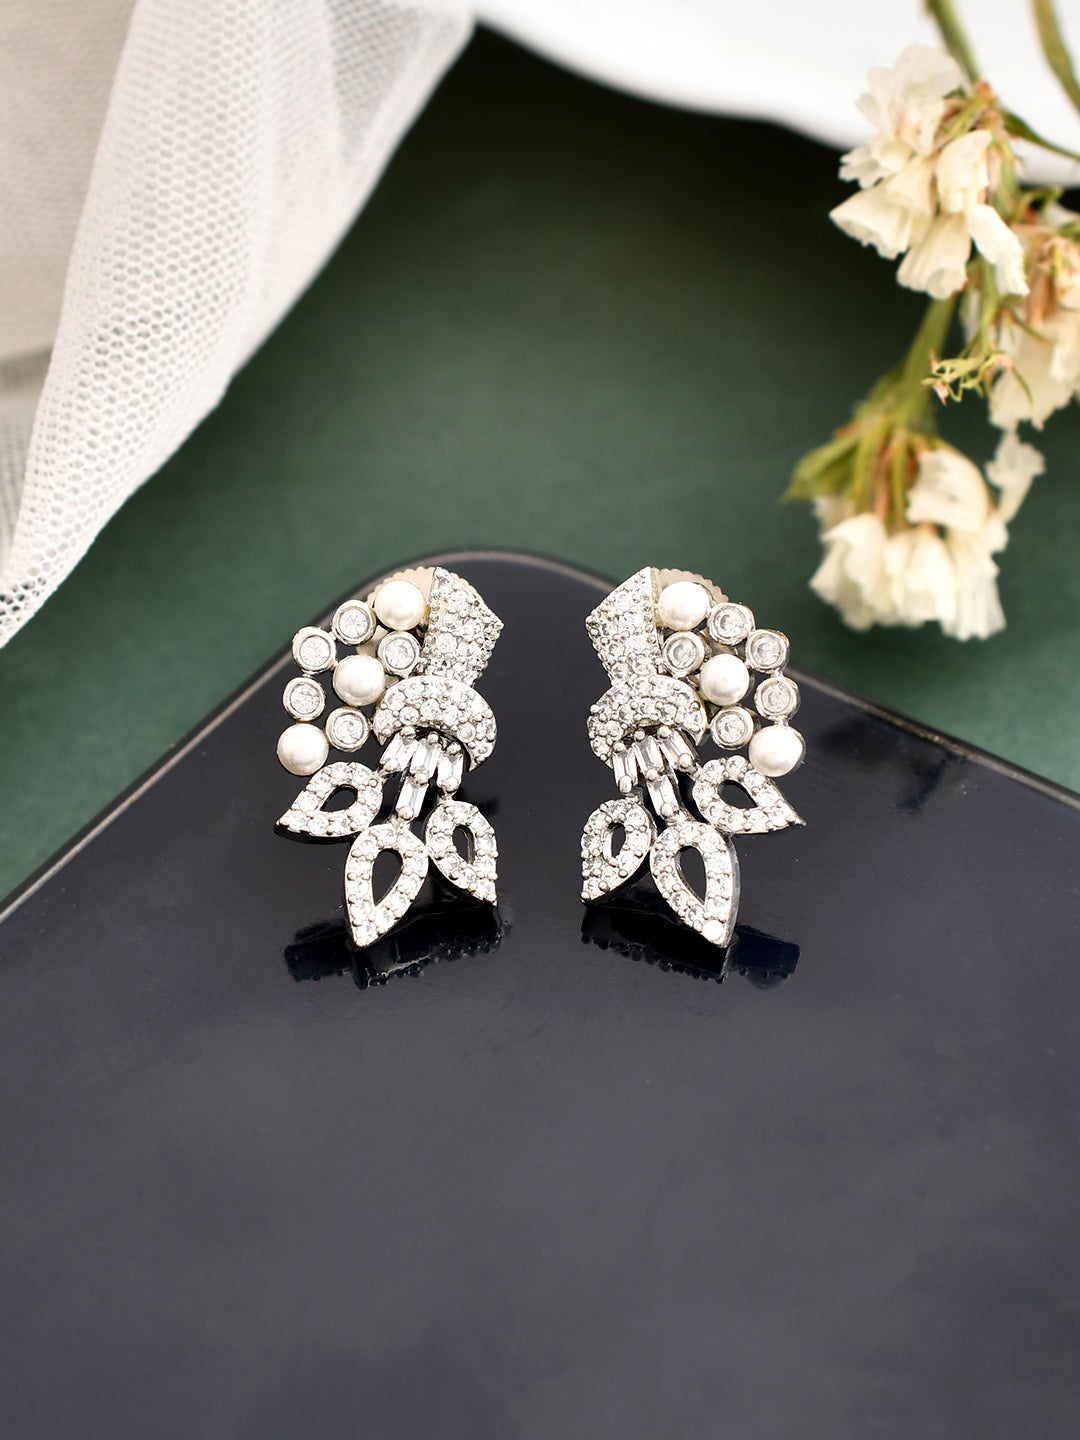 Elegant Diamond and Pearl Cluster Earrings